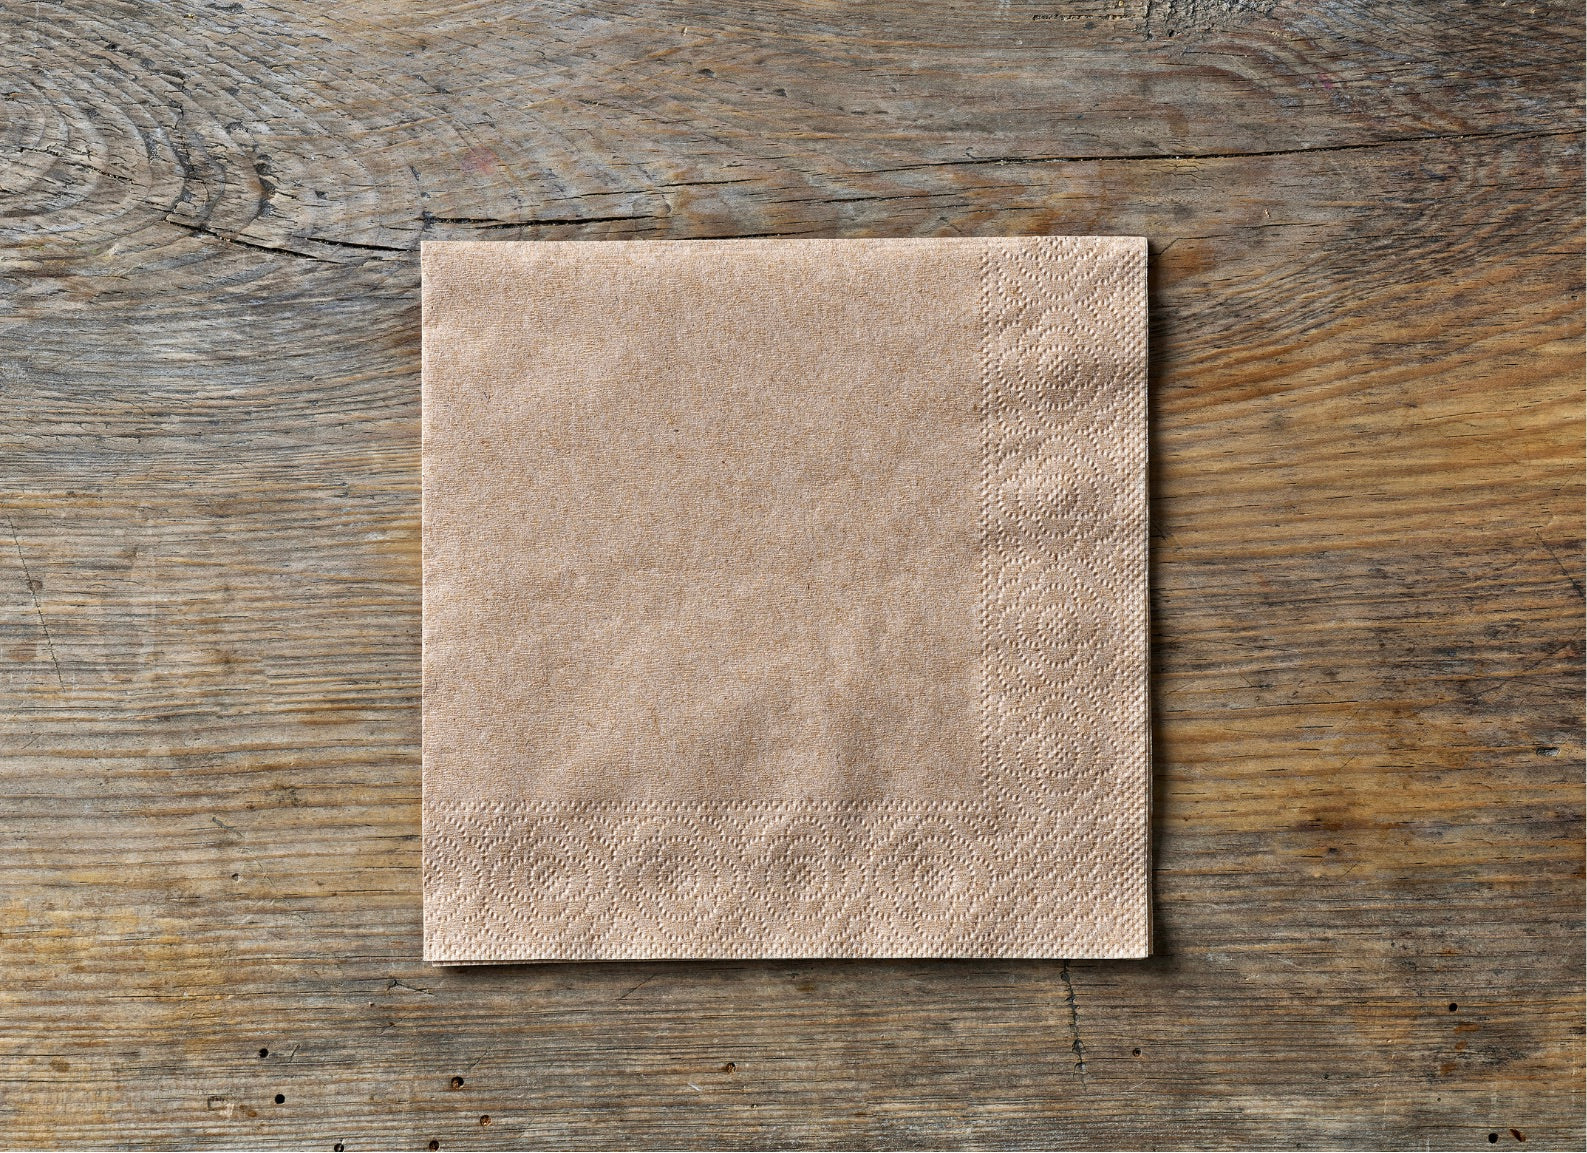 Serviettes en Papier Ouate jetables– Pas chères